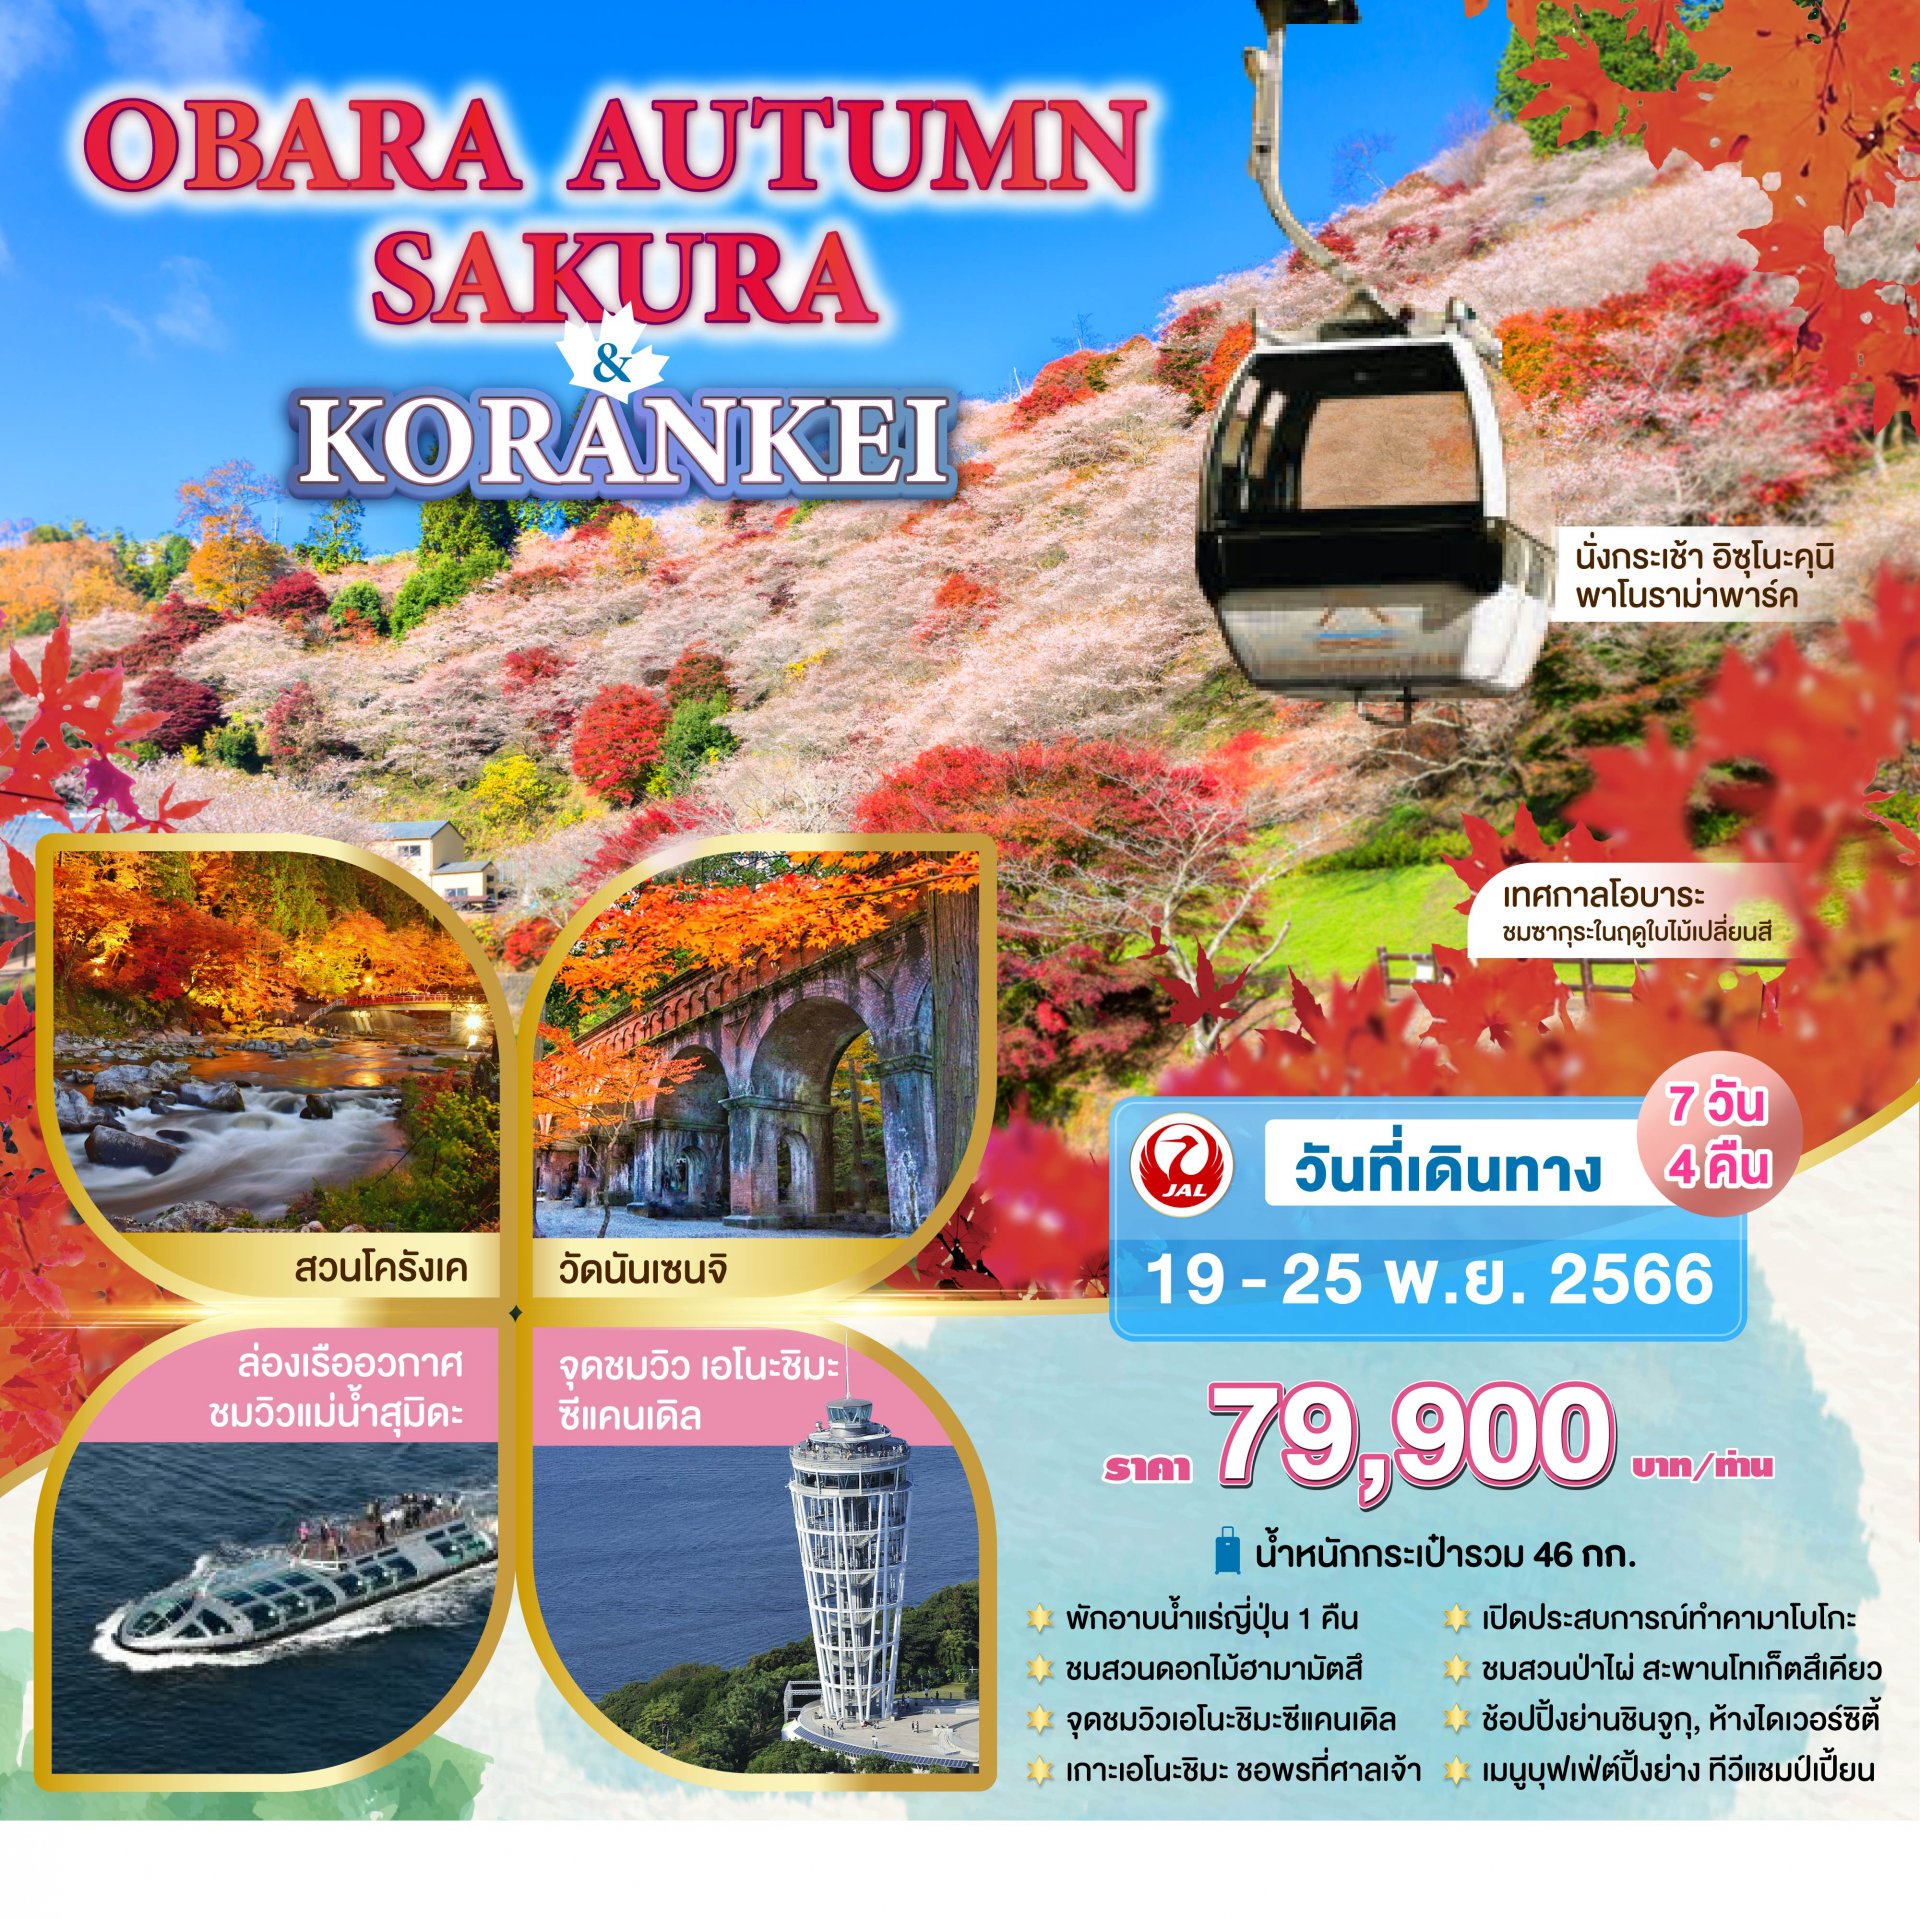 ทัวร์ญี่ปุ่น : OBARA AUTUMN SAKURA & KORANKEI  7 DAYS 4 NIGHTS